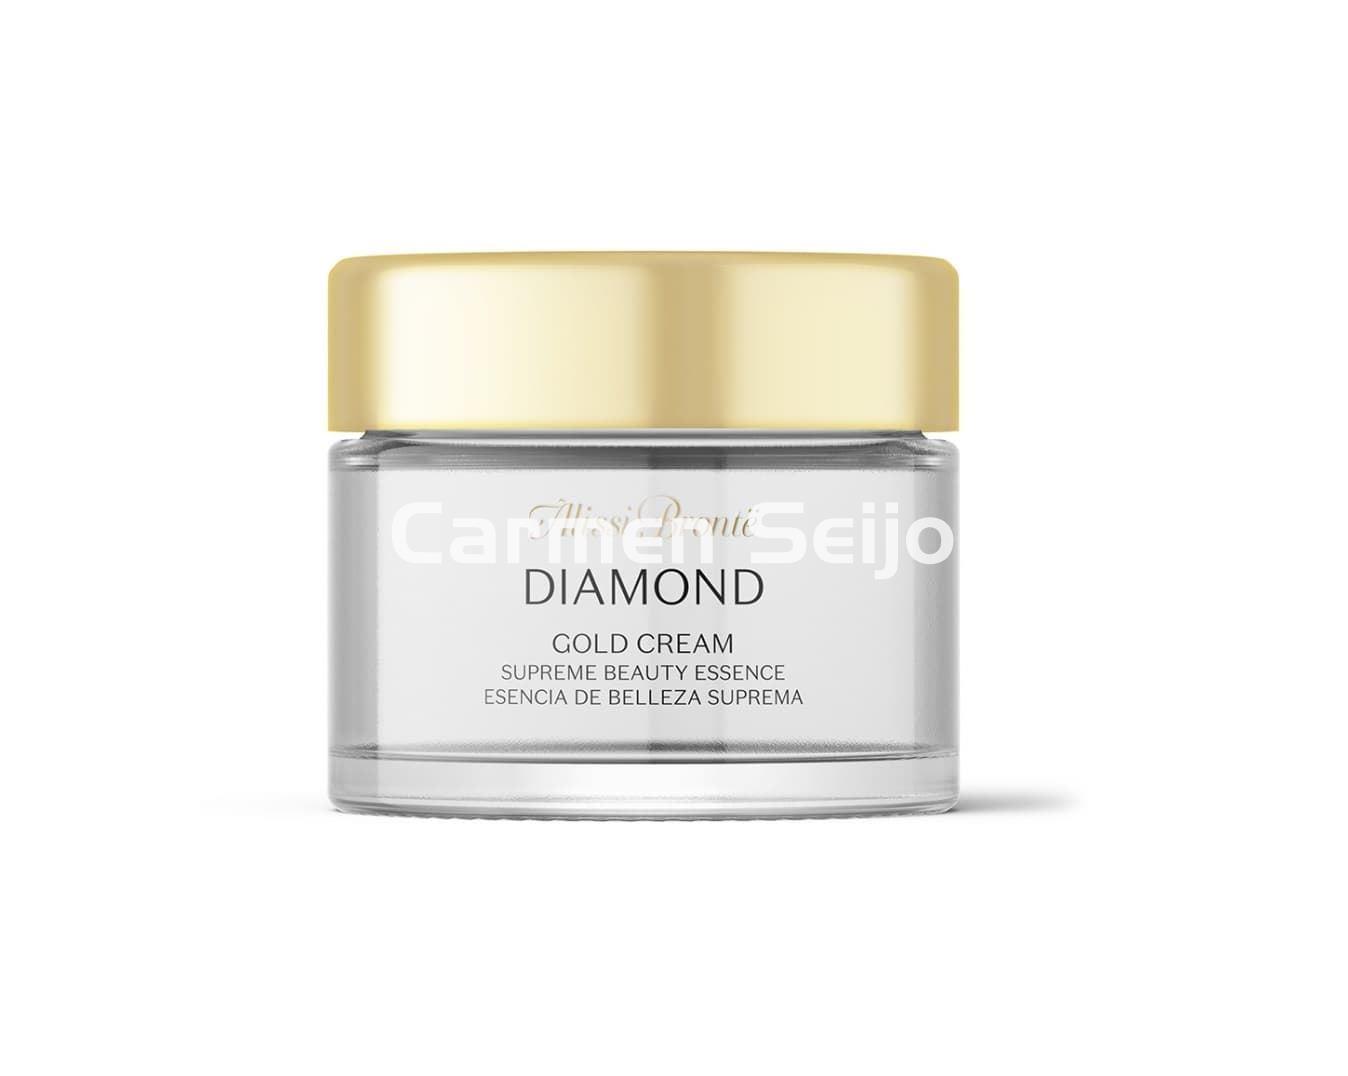 Alissi Brontë Crema de Belleza Suprema Diamond Gold Cream - Imagen 1